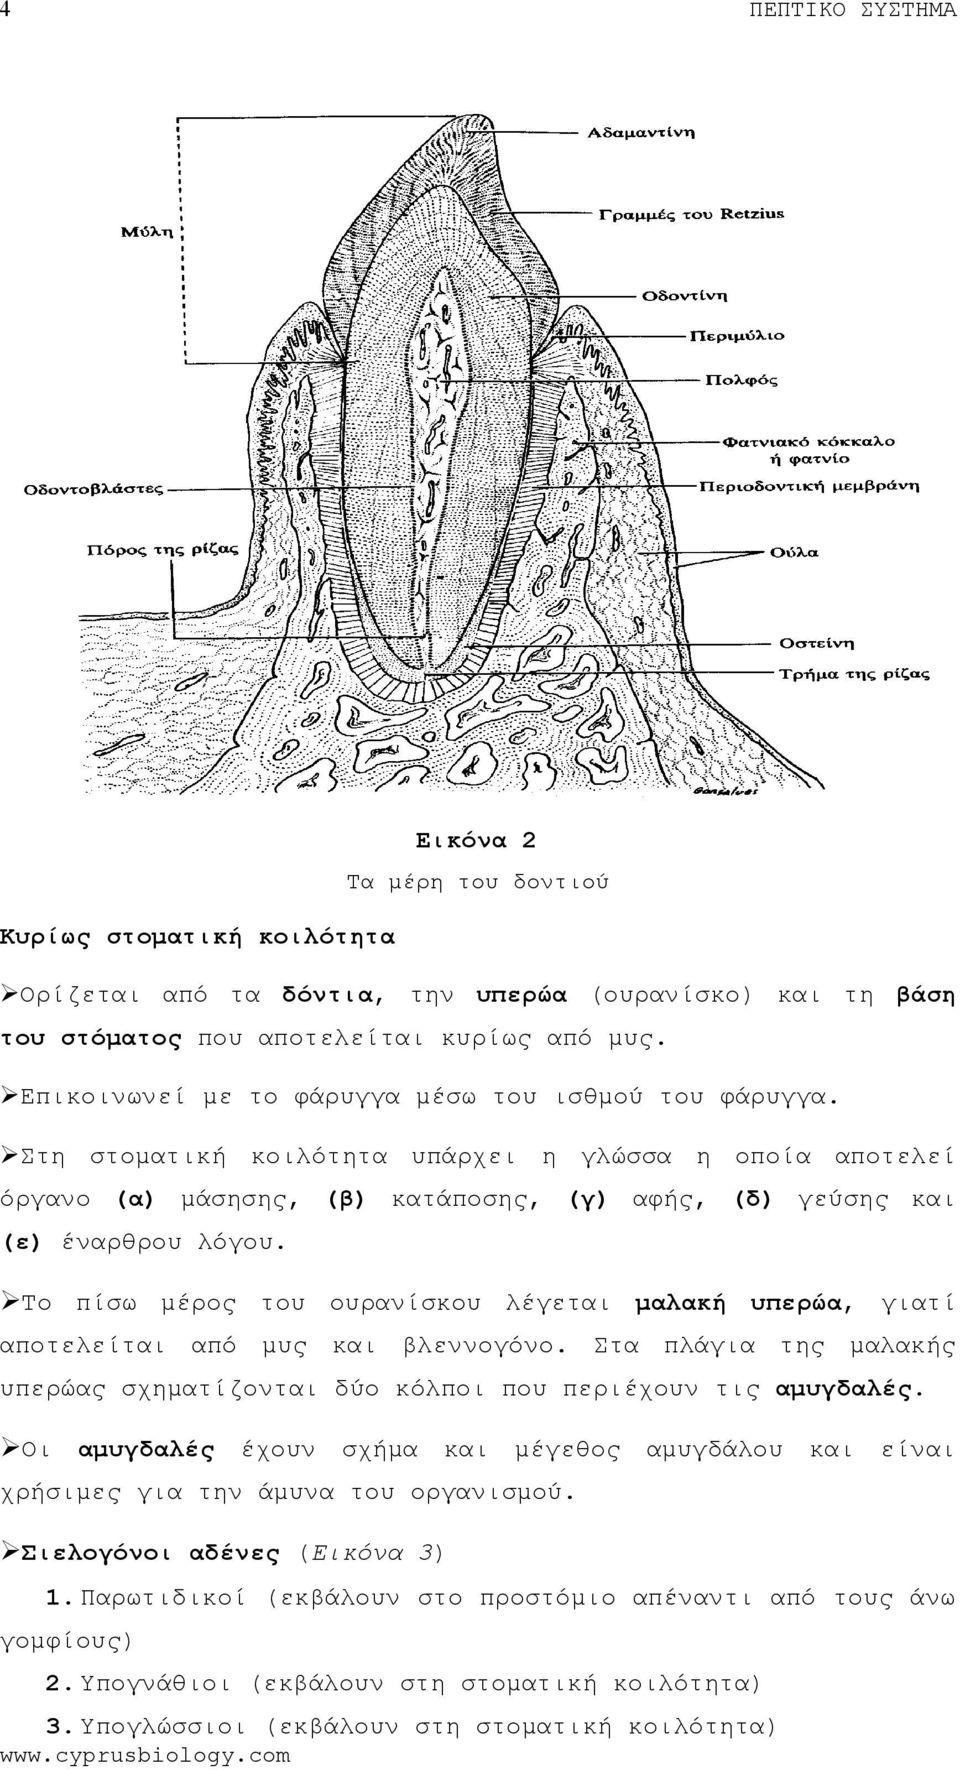 Το πίσω μέρος ουρανίσκου λέγεται μαλακή υπερώα, γιατί αποτελείται μυς βλεννογόνο. Στα πλάγια της μαλακής υπερώας σχηματίζονται δύο κόλποι που περιέχουν τις αμυγδαλές.